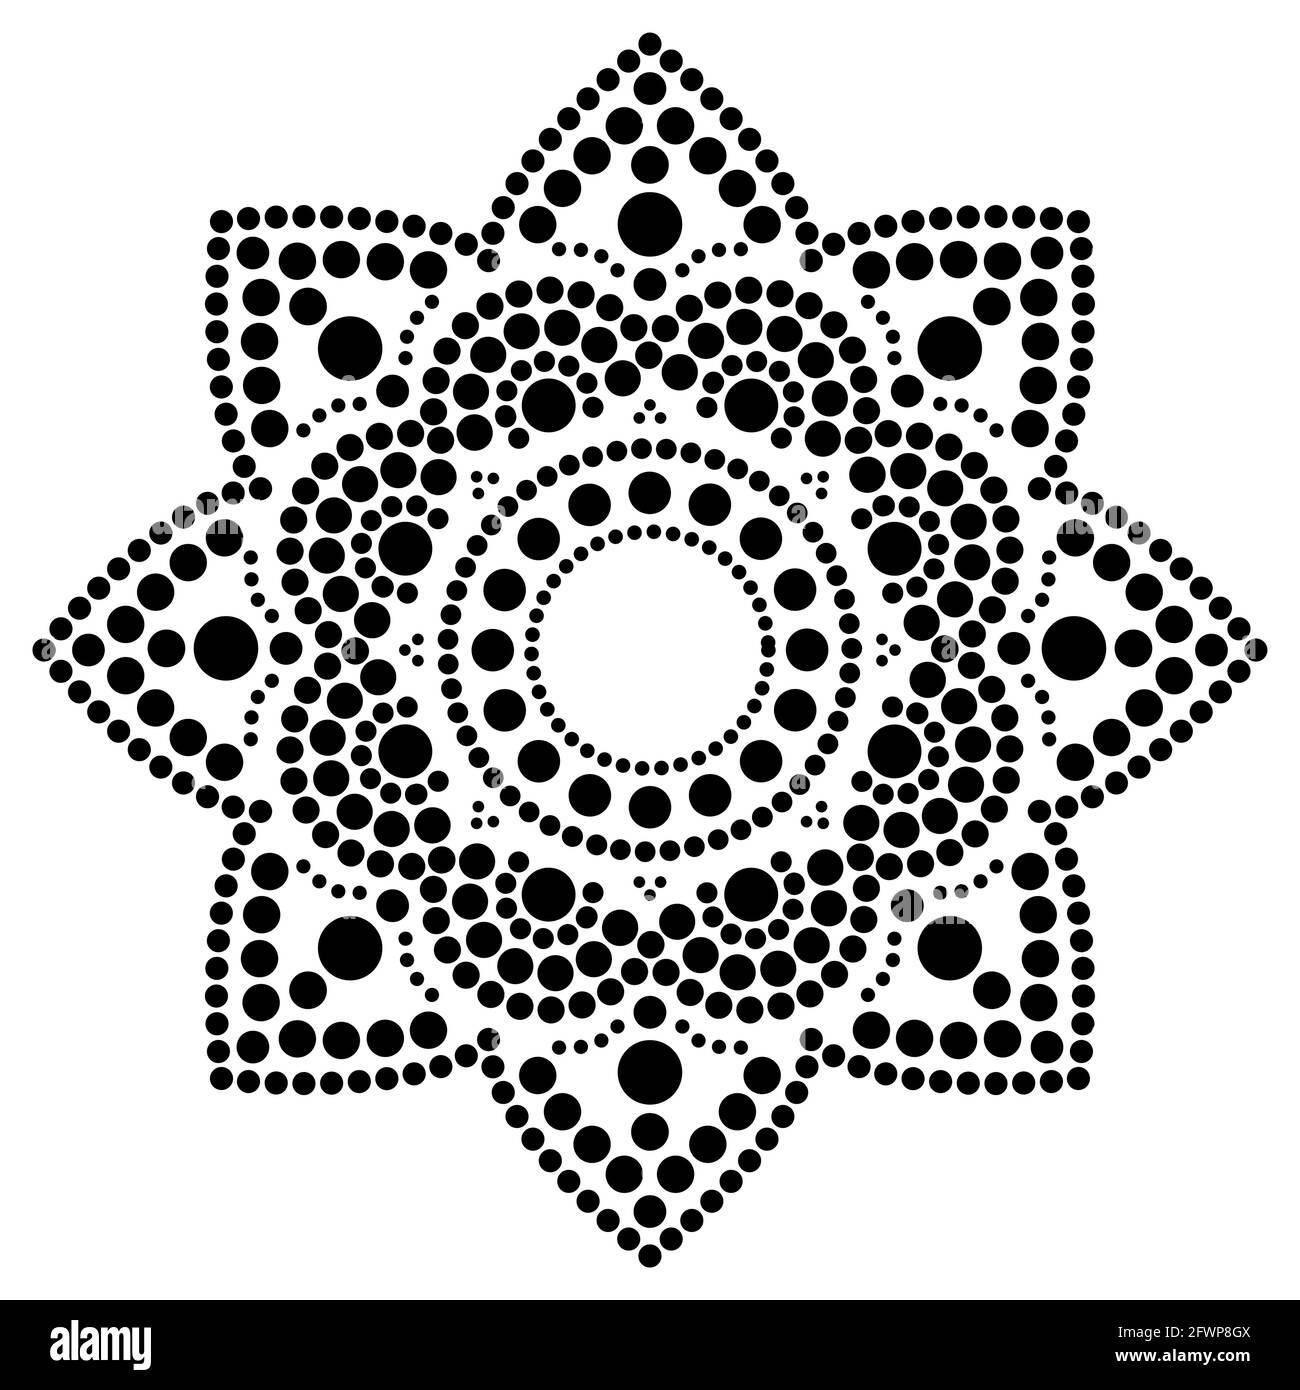 Vecteur de peinture à points mandala ethnique, dessin traditionnel aborigène de peinture à points, décoration ethnique florale de l'Australie en noir sur fond blanc Illustration de Vecteur